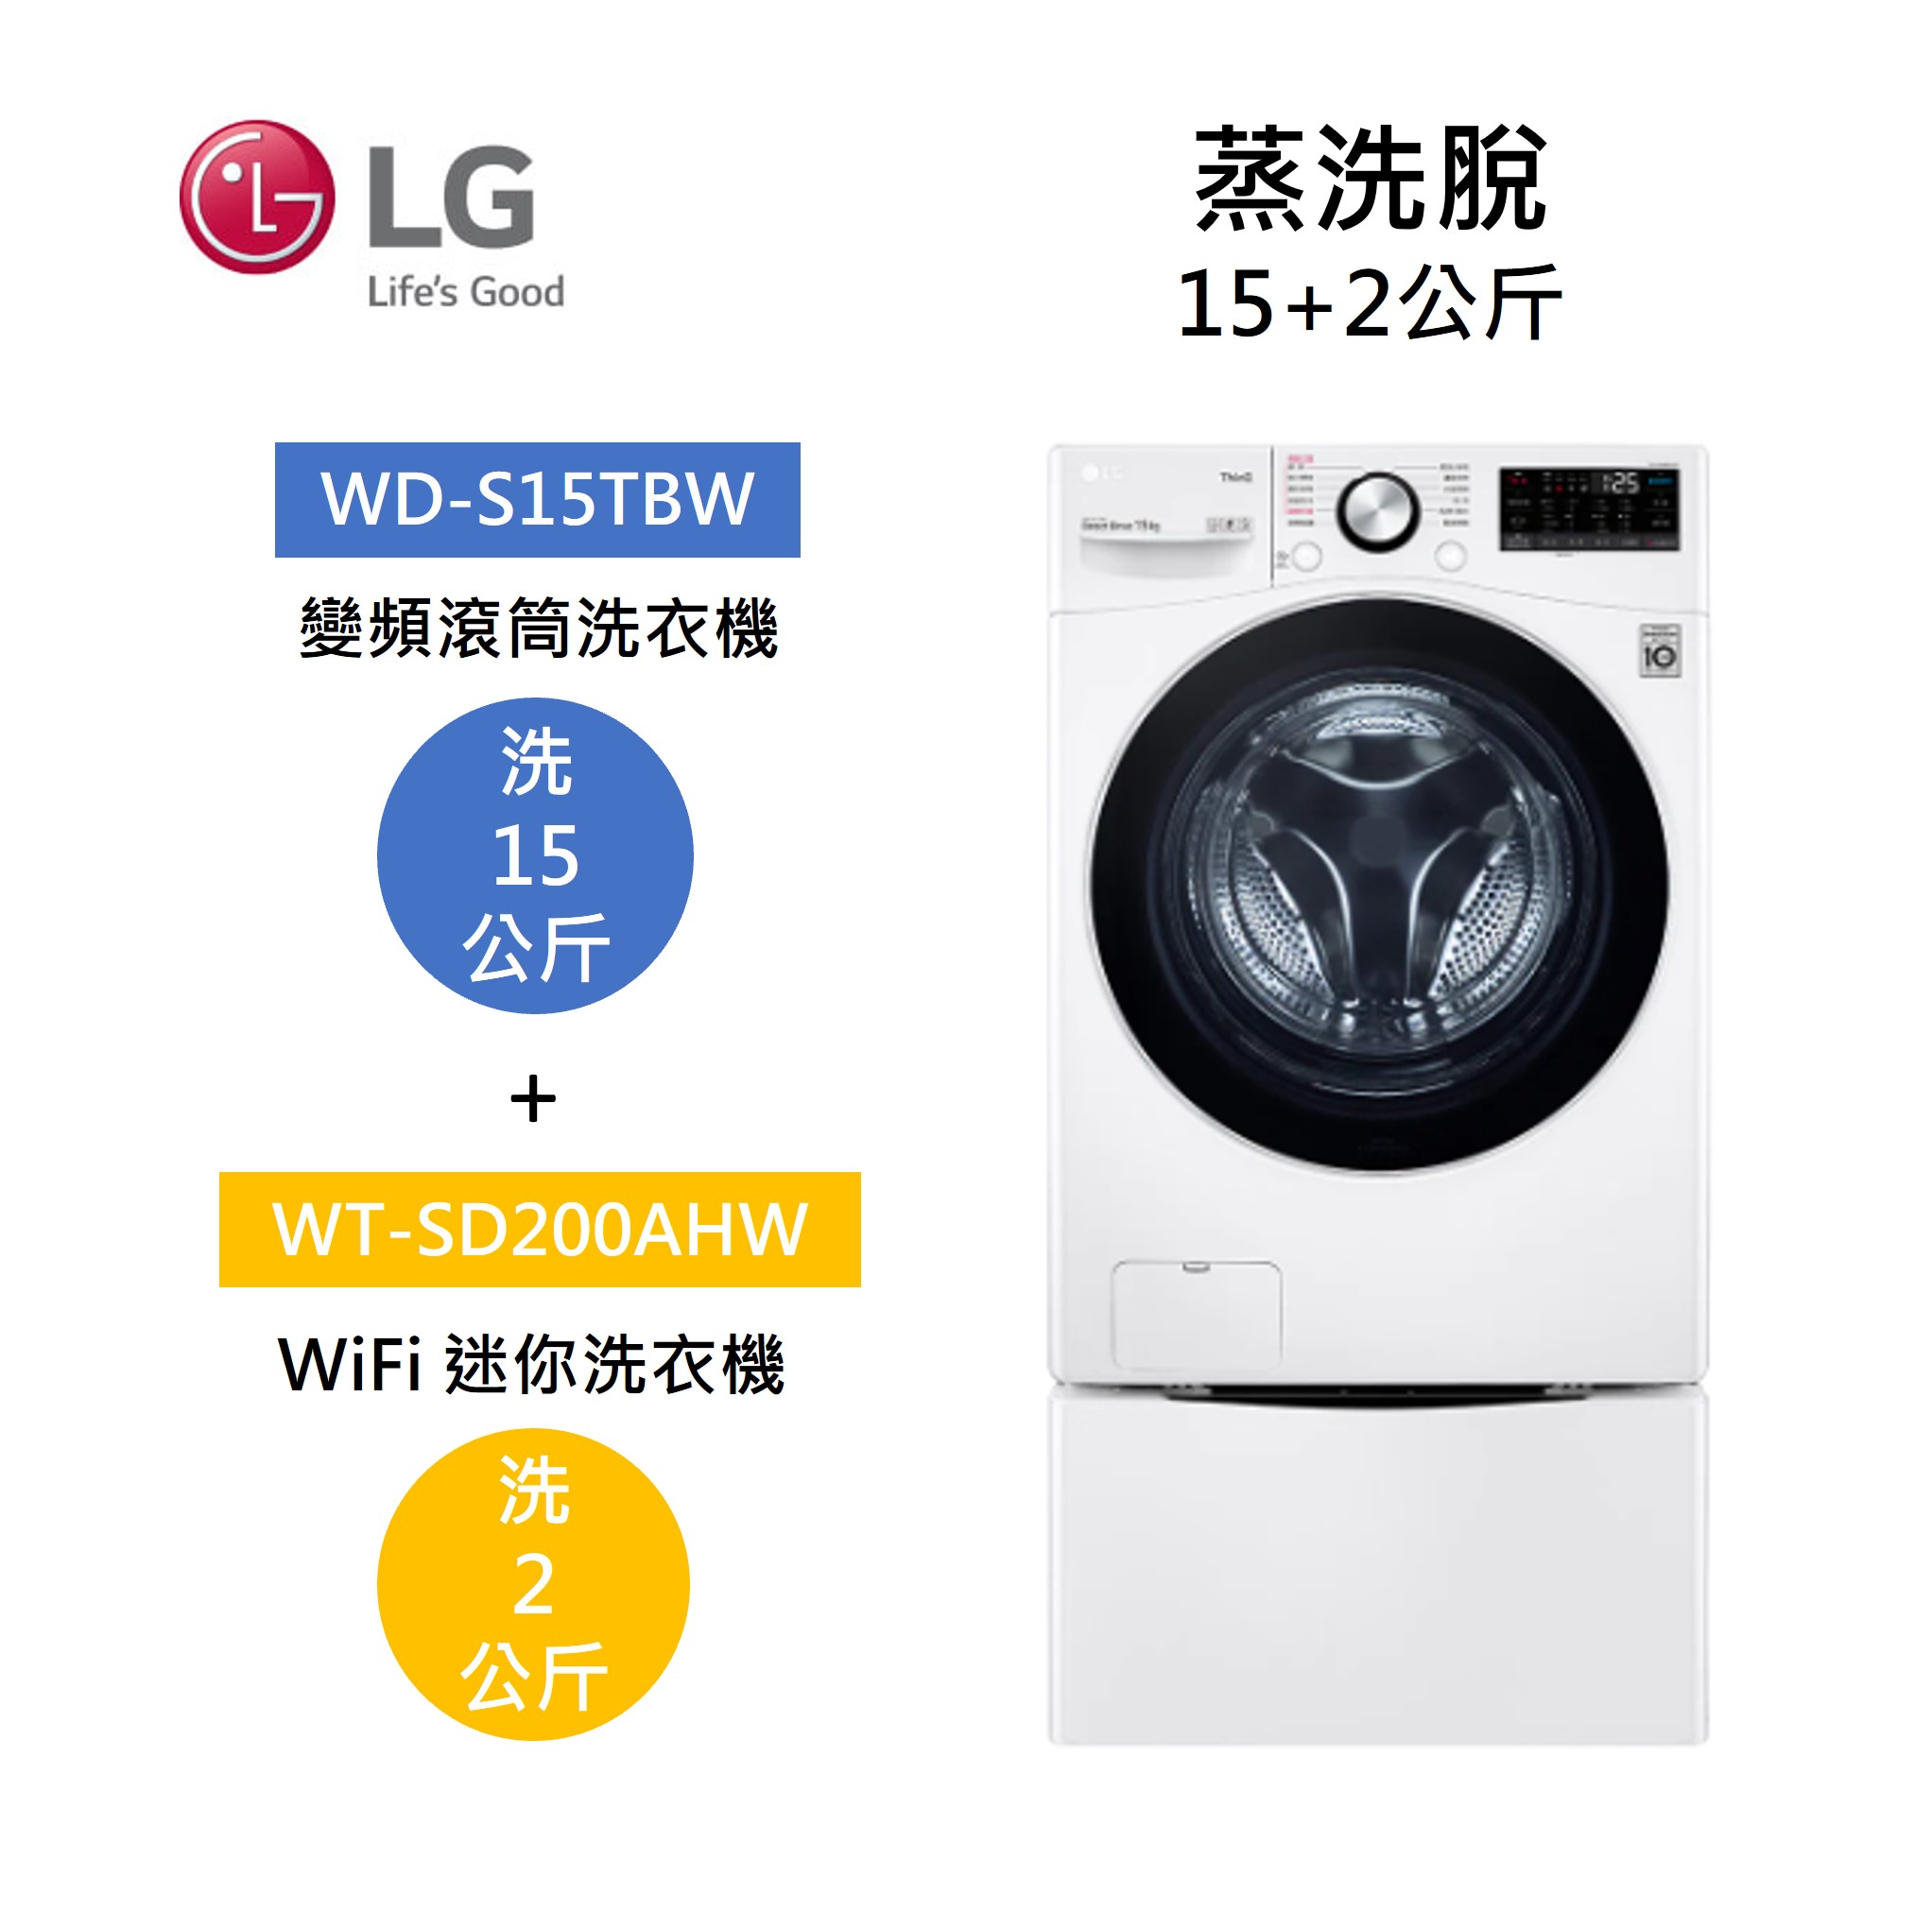 【點數回饋5+8%點數回饋】LG 樂金 WD-S15TBW+WT-SD200AHW 15+2公斤洗衣機 蒸洗脫